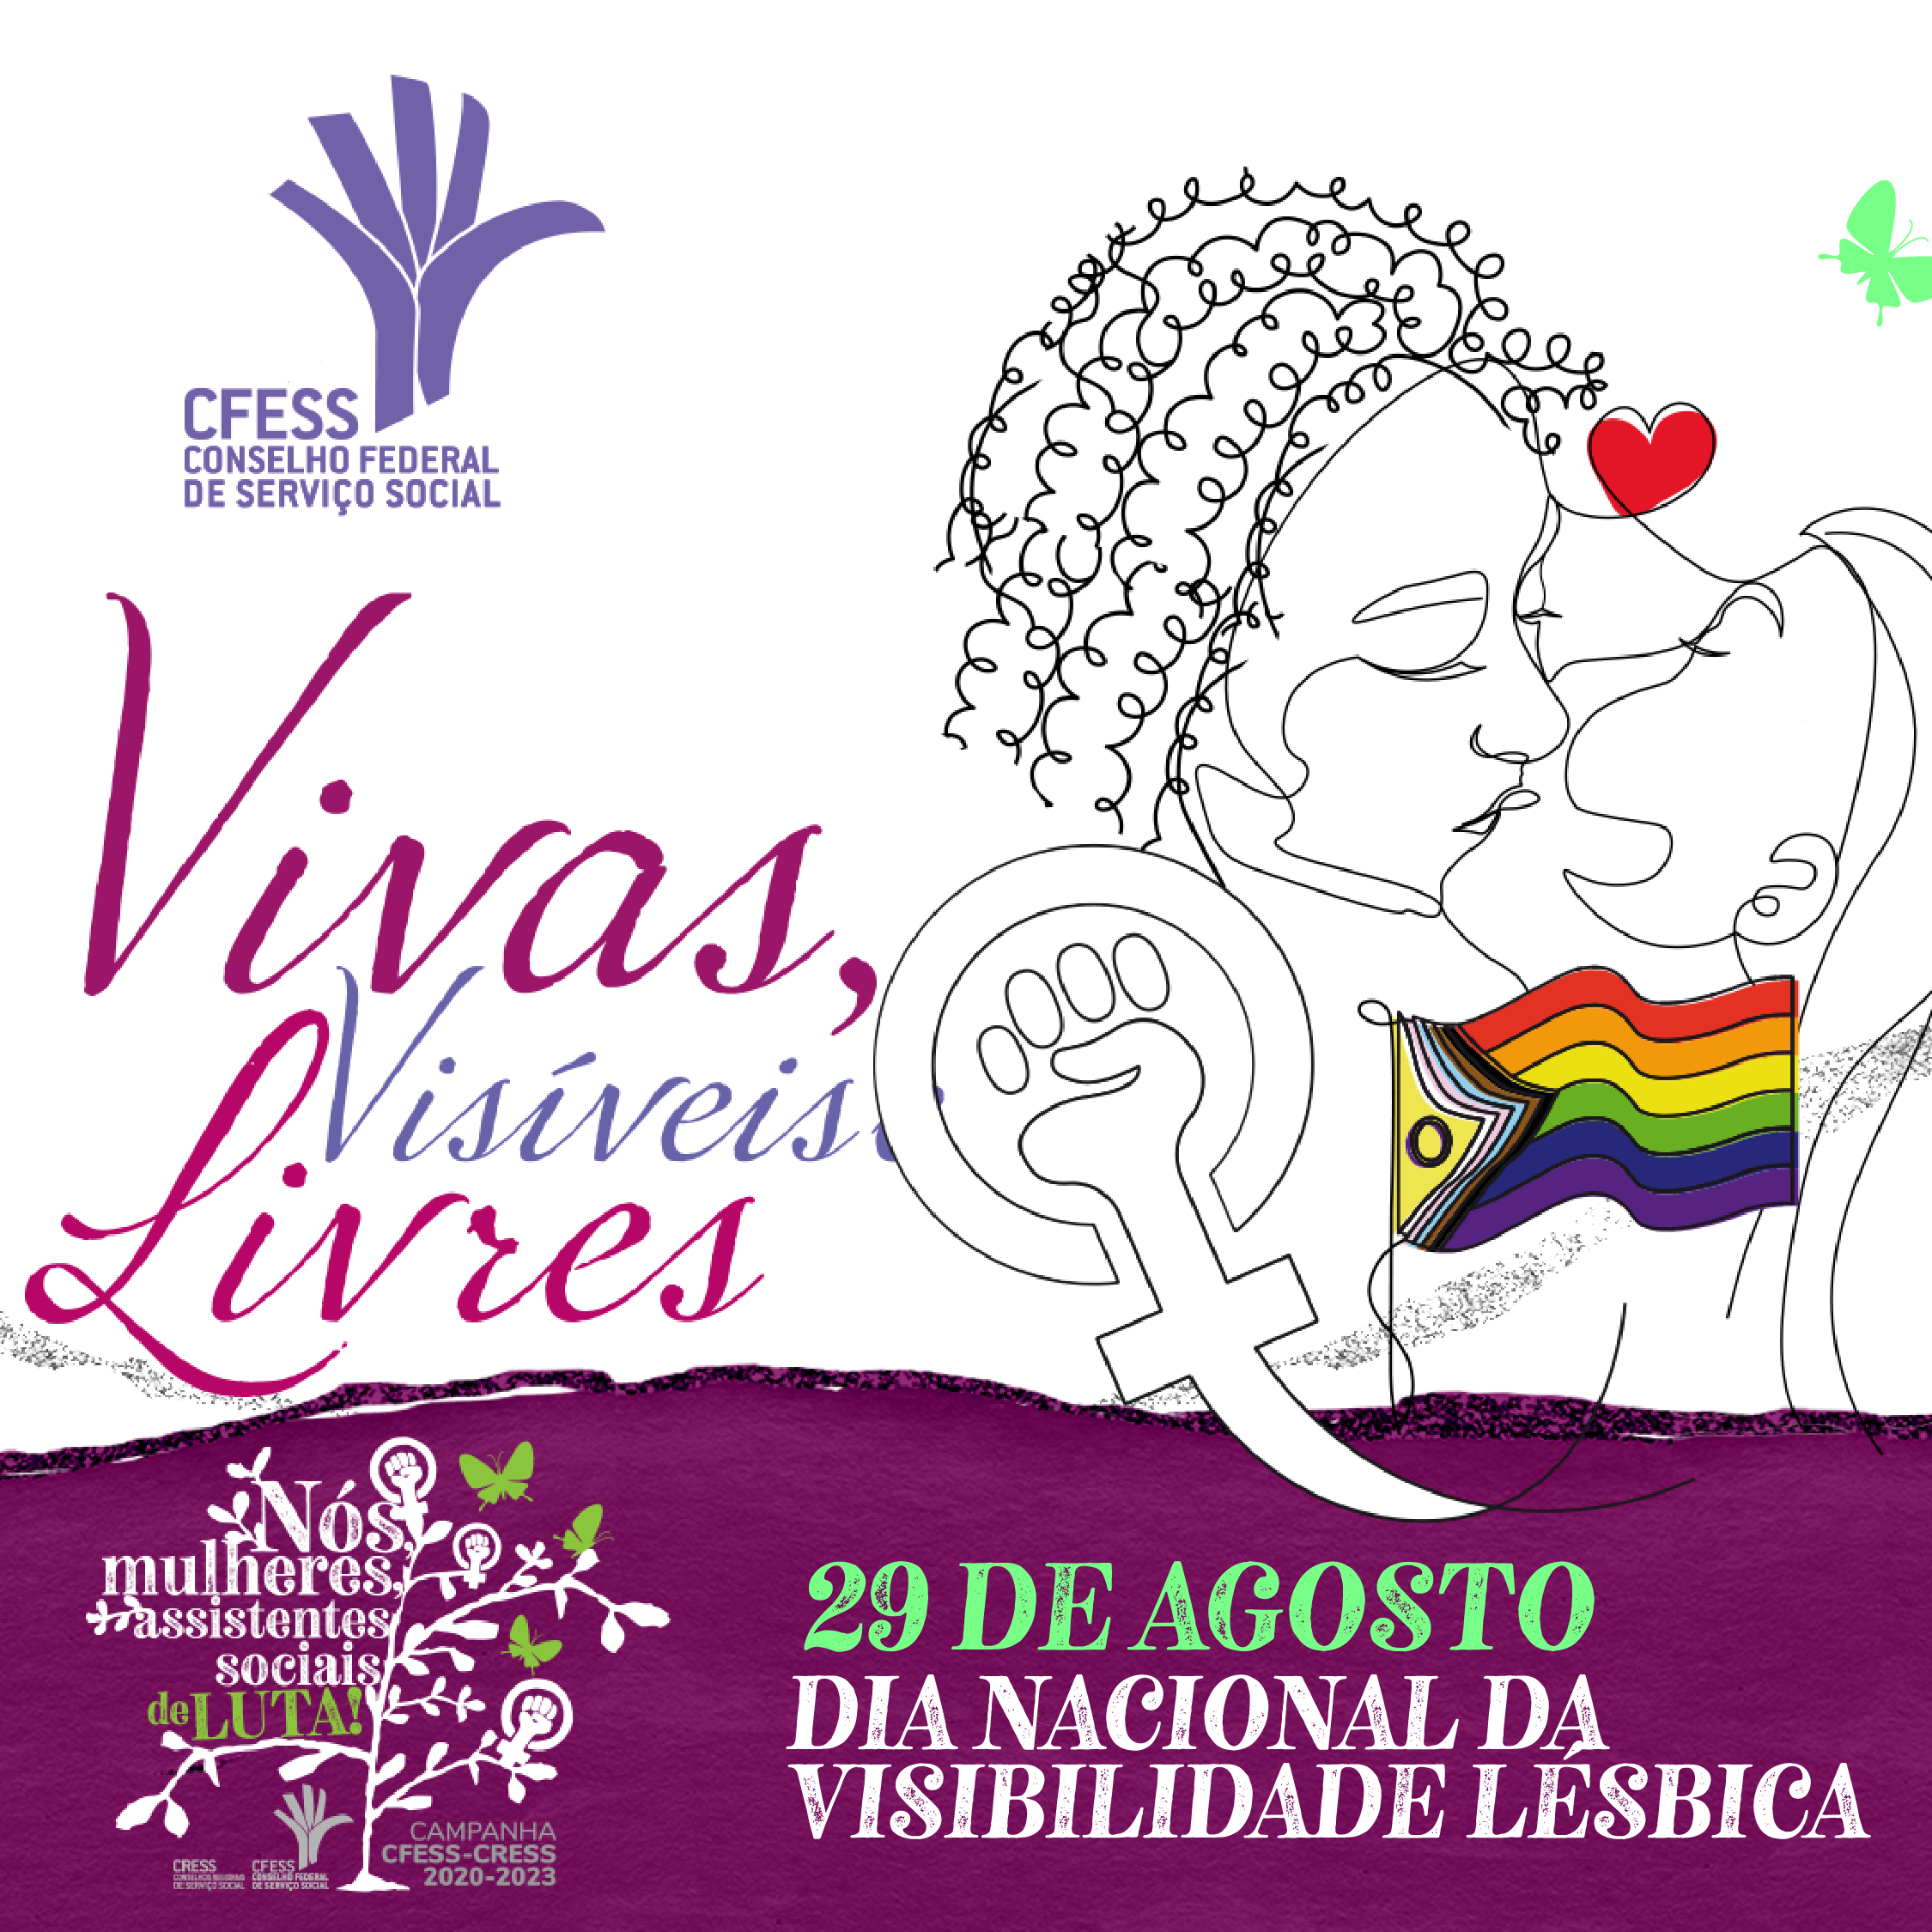 card branco com rodapé roxo traz logo do CFESS e um desenho em linhas de duas mulheres, uma negra e uma branca, se beixando. Do beijo forma um coração vermelho e a bandeira LGBTIQA.